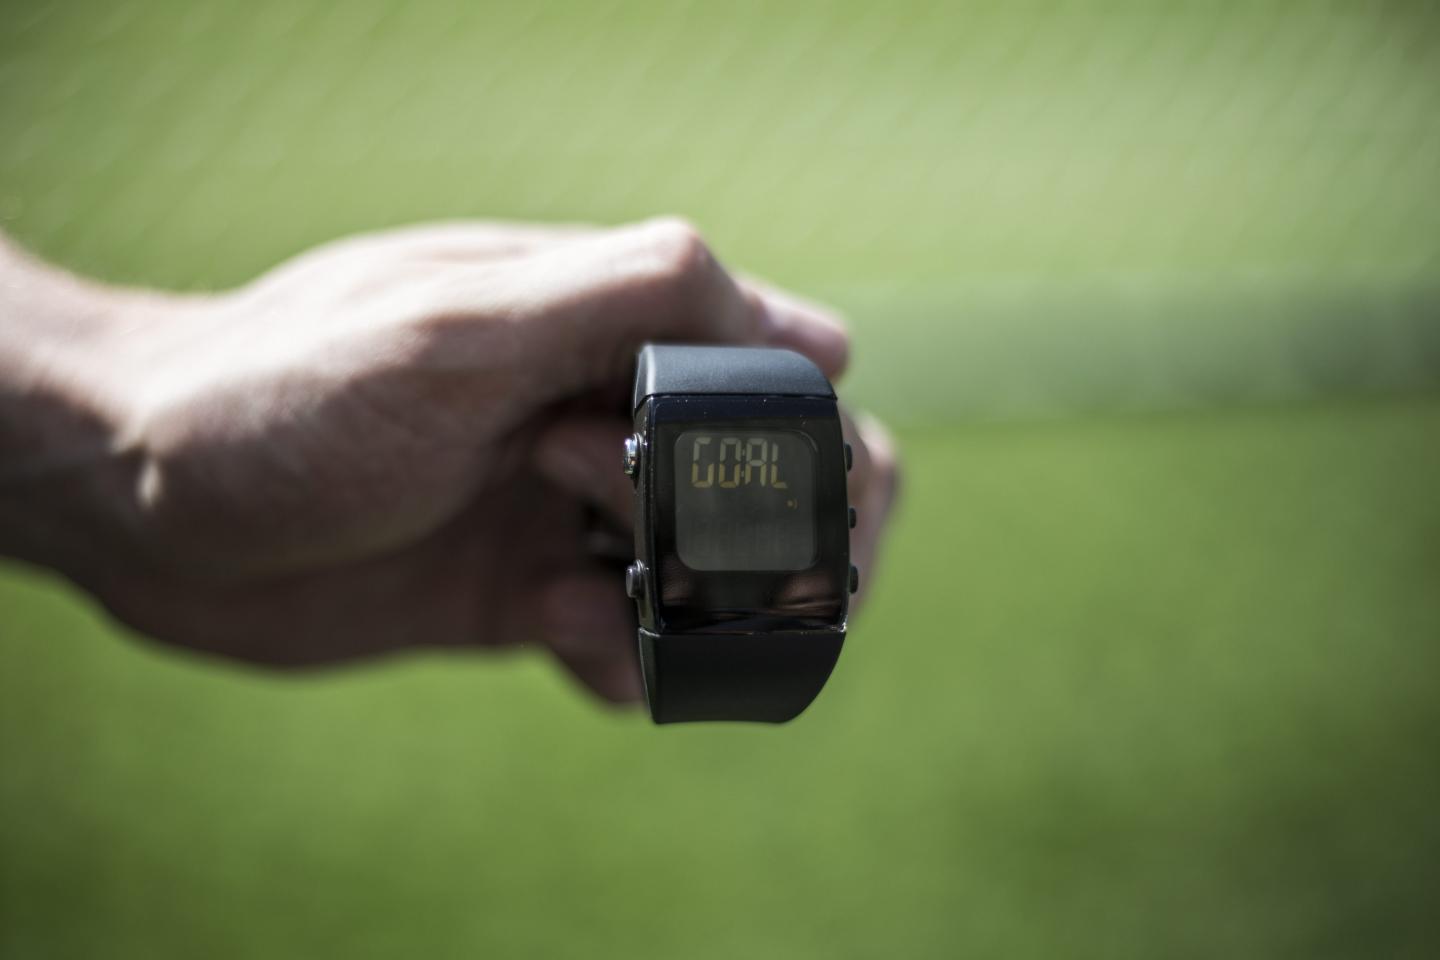 Zegarek, na którym wyświetla się napis GOAL w momencie, gdy piłka całym obwodem przekroczy linię bramkową. Technologia goal-line miała pomóc arbitrom w rozstrzyganiu spornych sytuacji - czy był gol, czy nie.